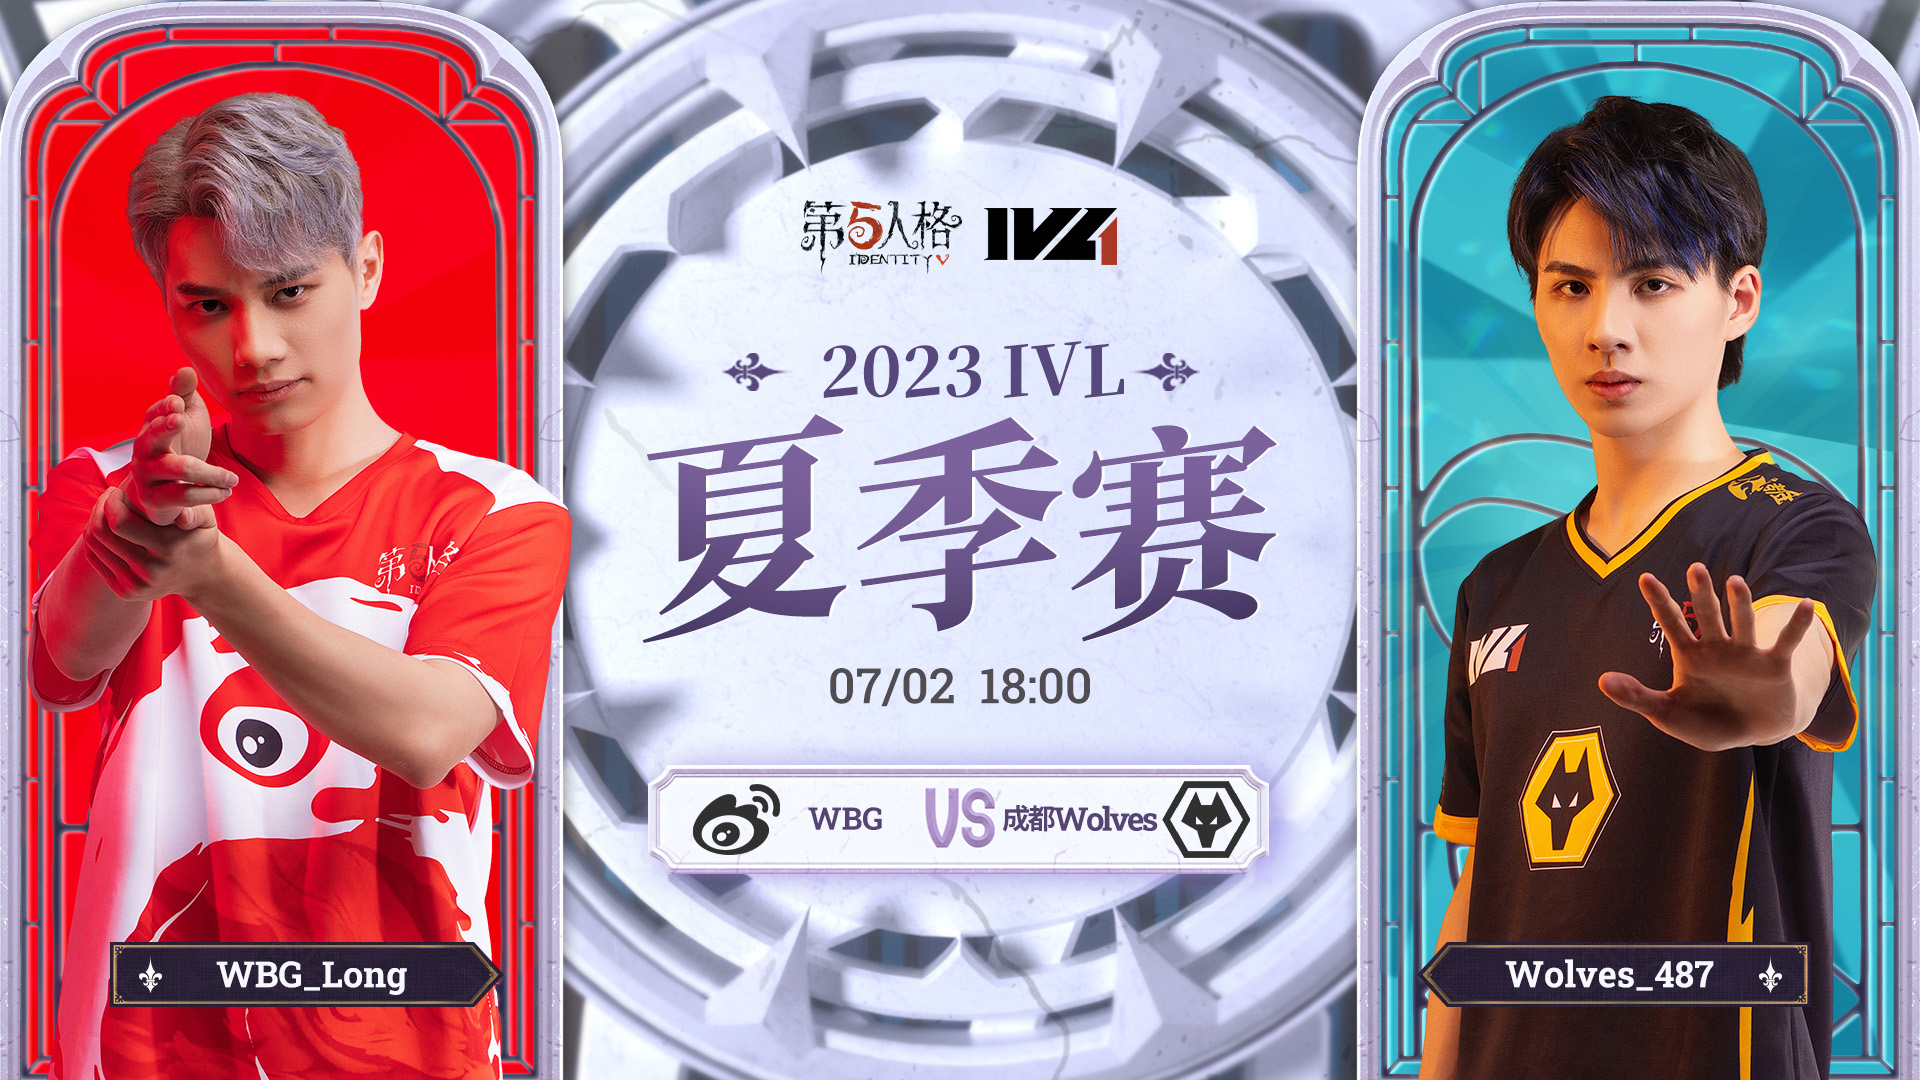 【2023IVL】夏季赛W4D3录像 WBG vs 成都Wolves